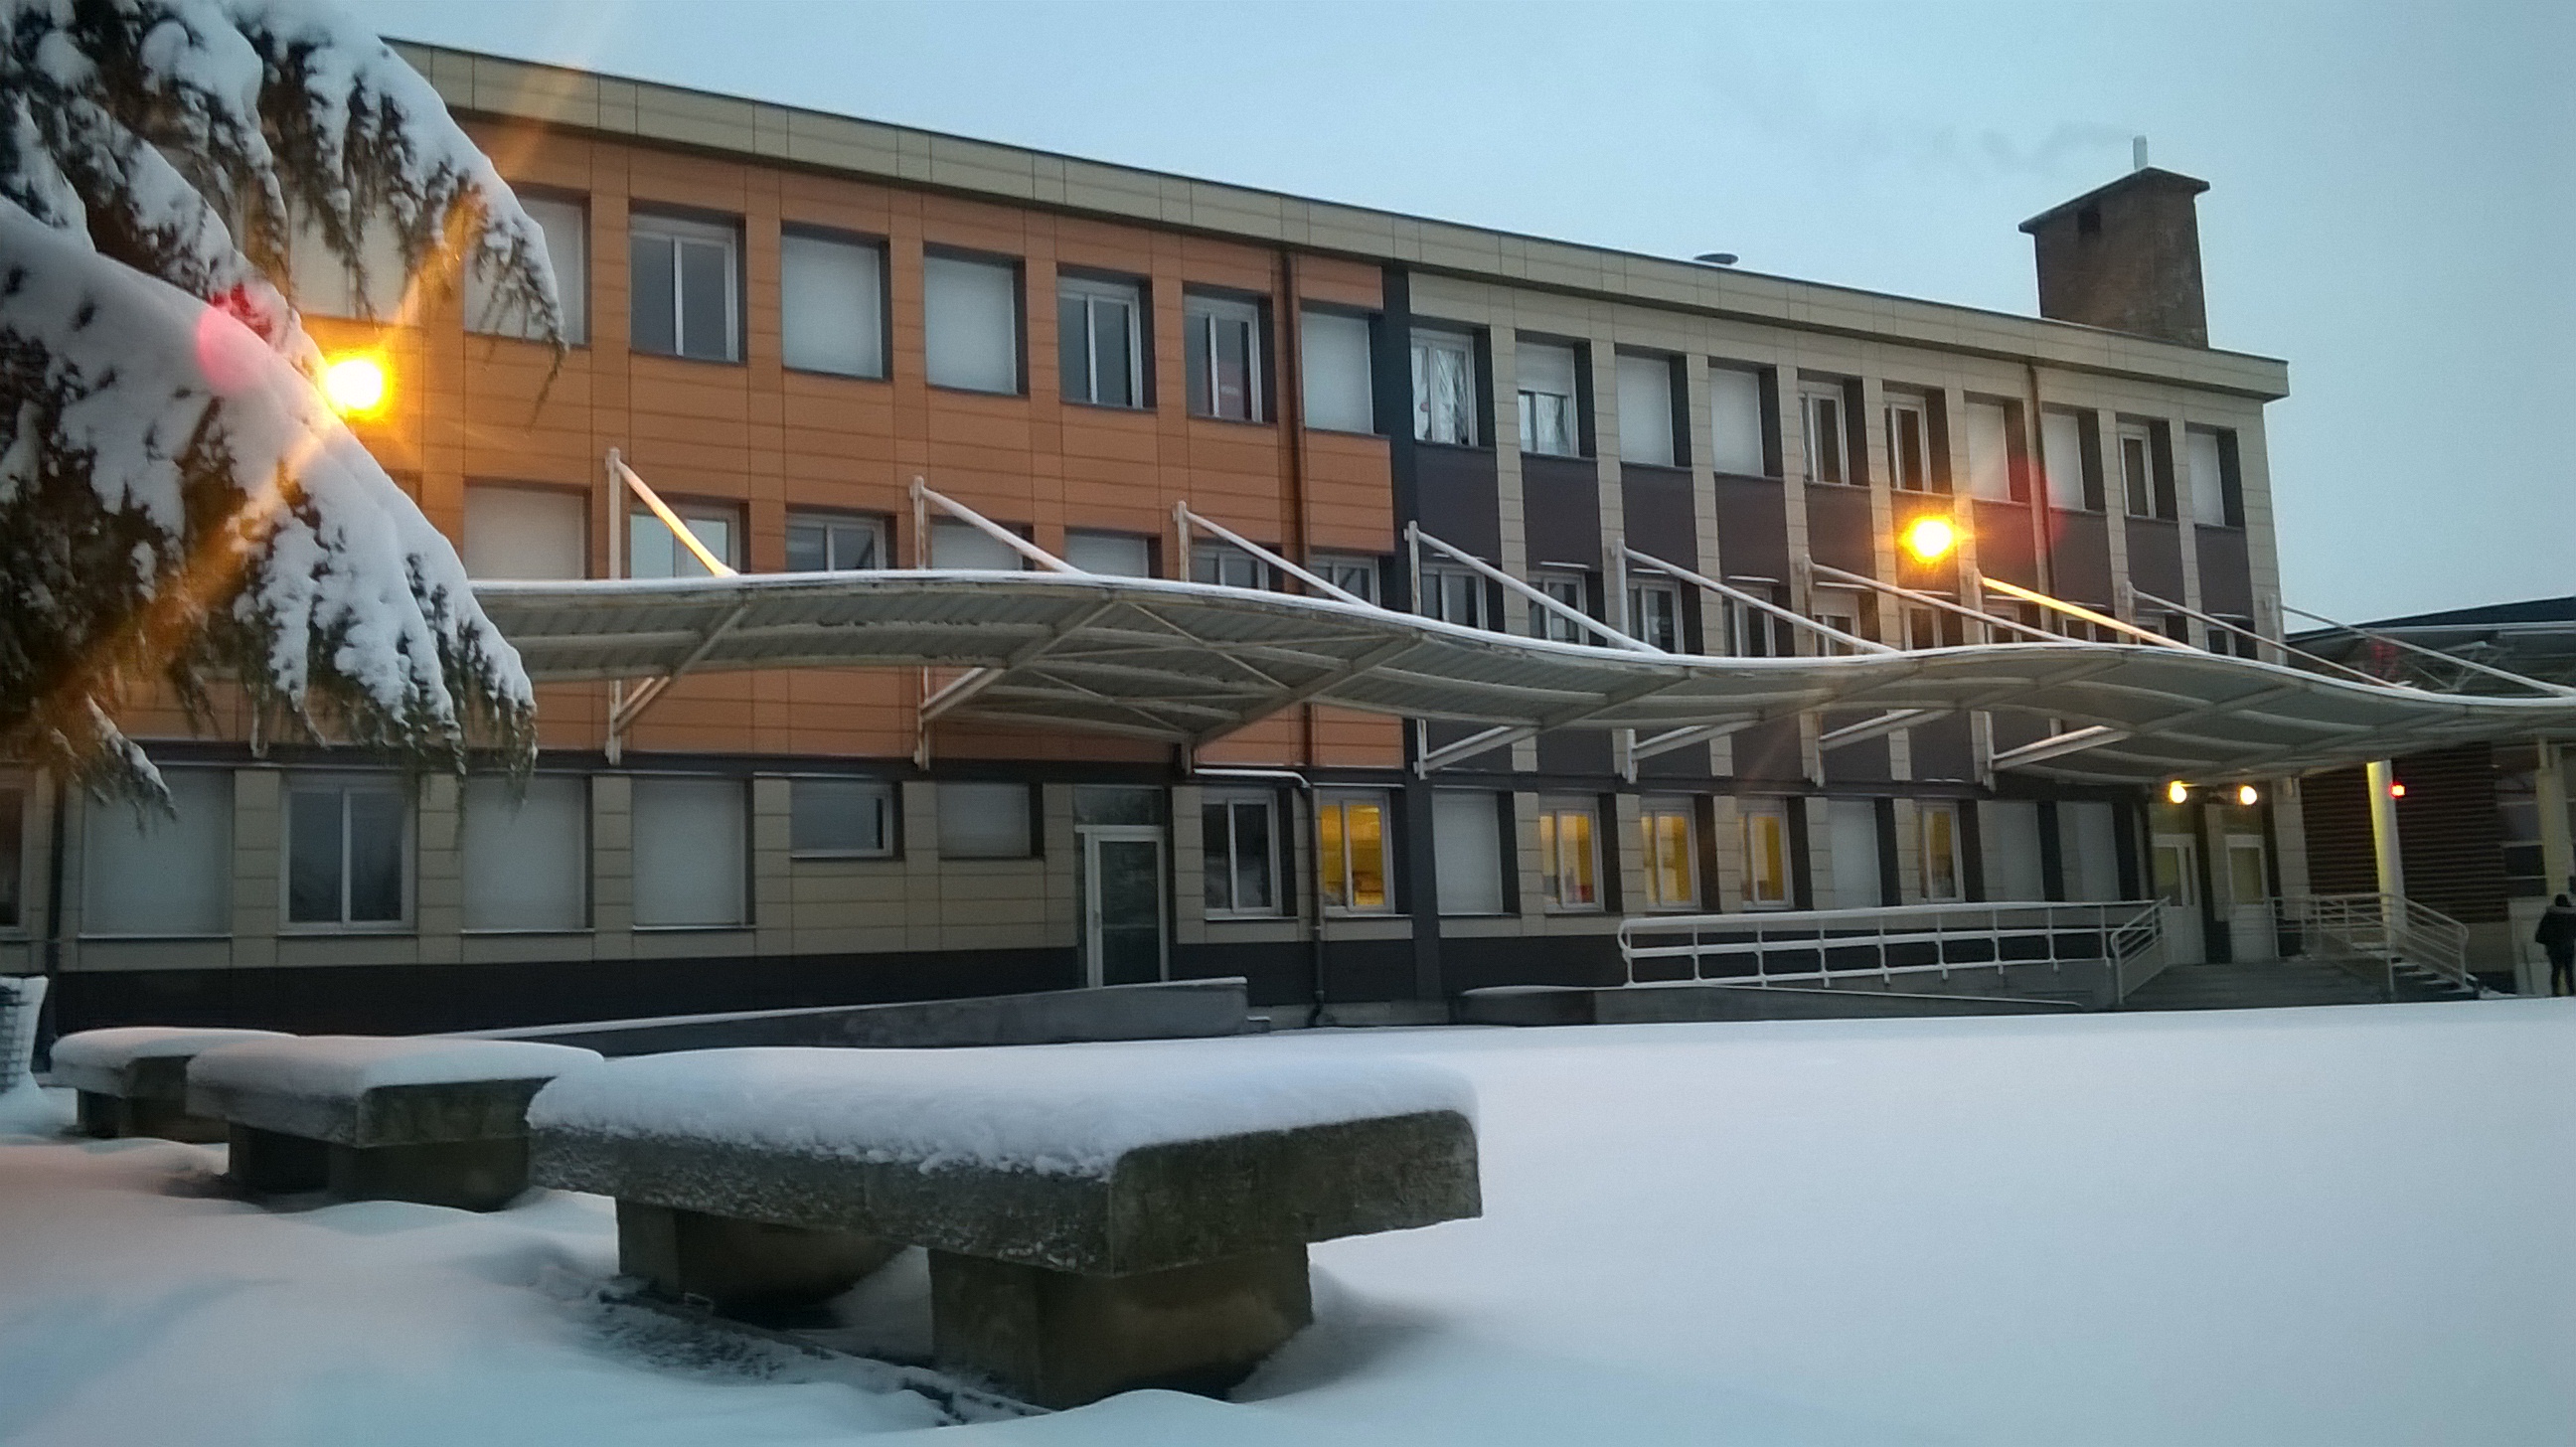 Le collège sous la neige - Collège Michel Vignaud